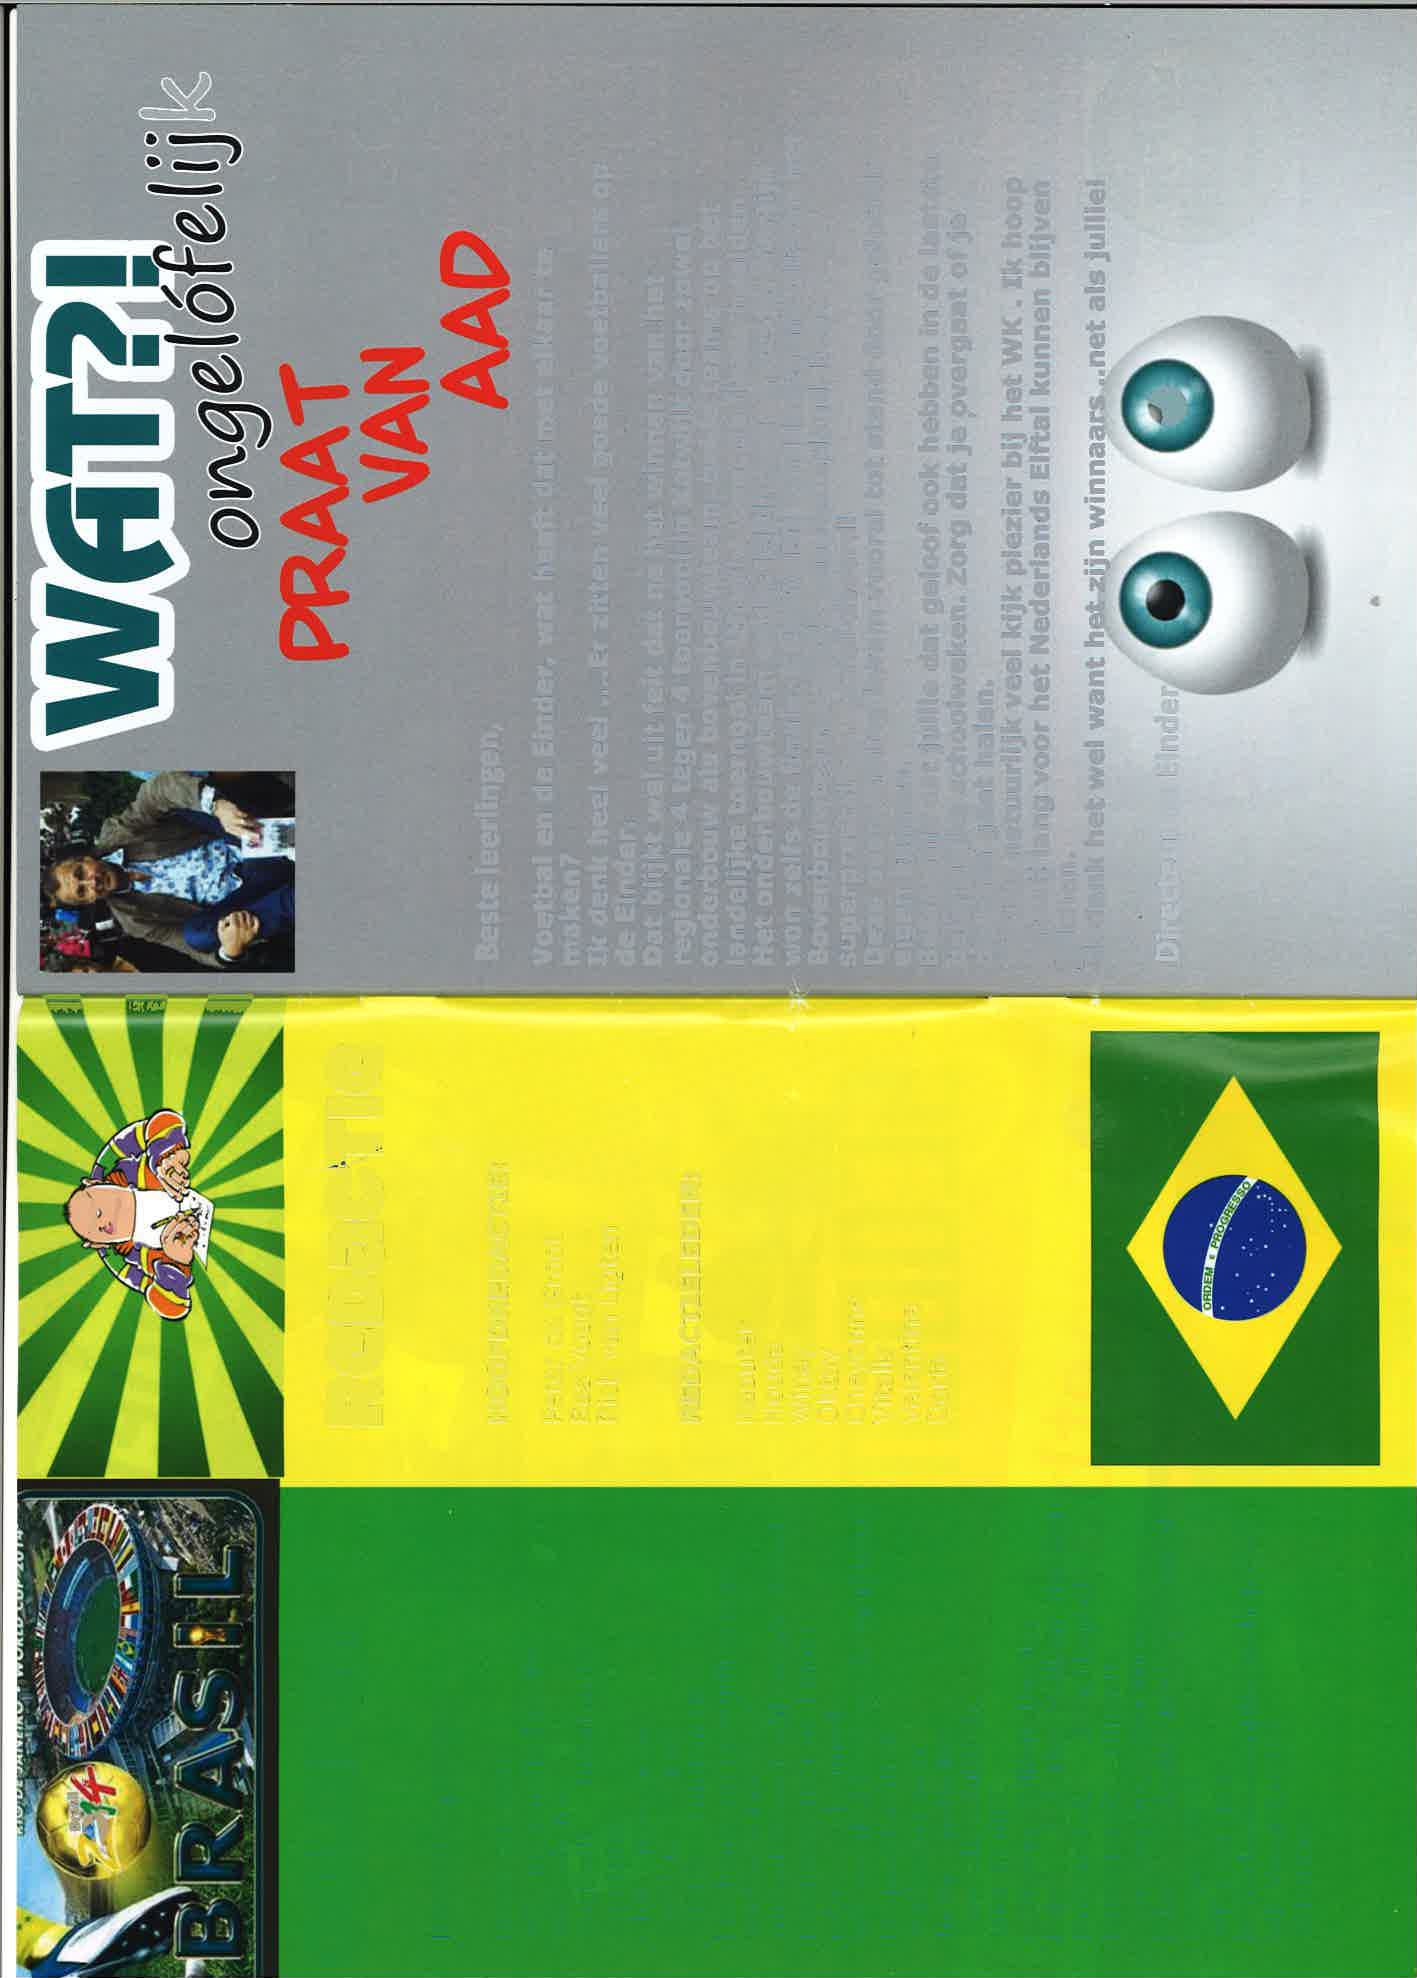 Brdlil ),, {l ïl il f#,_t L-\ï1 ffi dtu k col0fon lnhoudsopgave: Praat van Aad WK- informatie Brazilië WK-schema Australië - nformatie Sportgala Chil - informatie Sport na School Spanje - nformatie